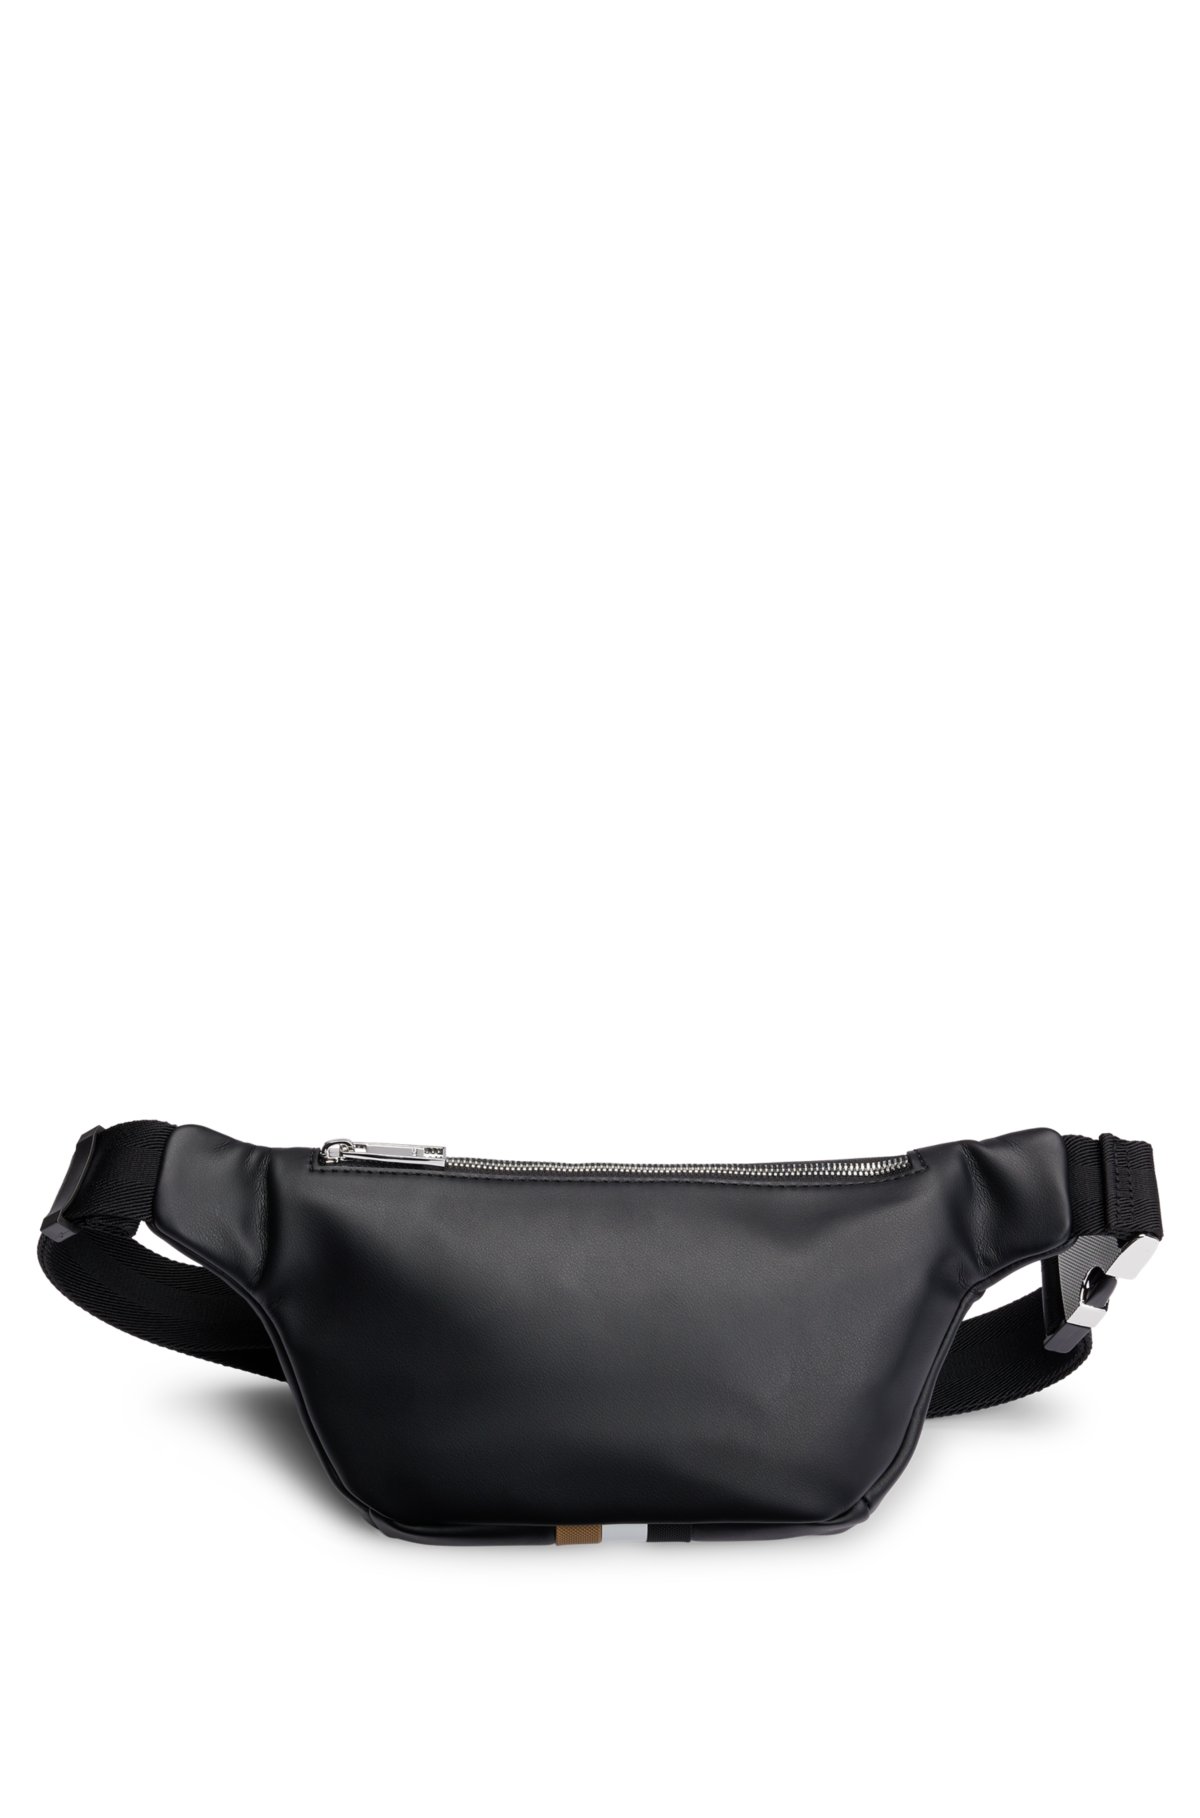 Black Leather Signature Stripe Bum Bag